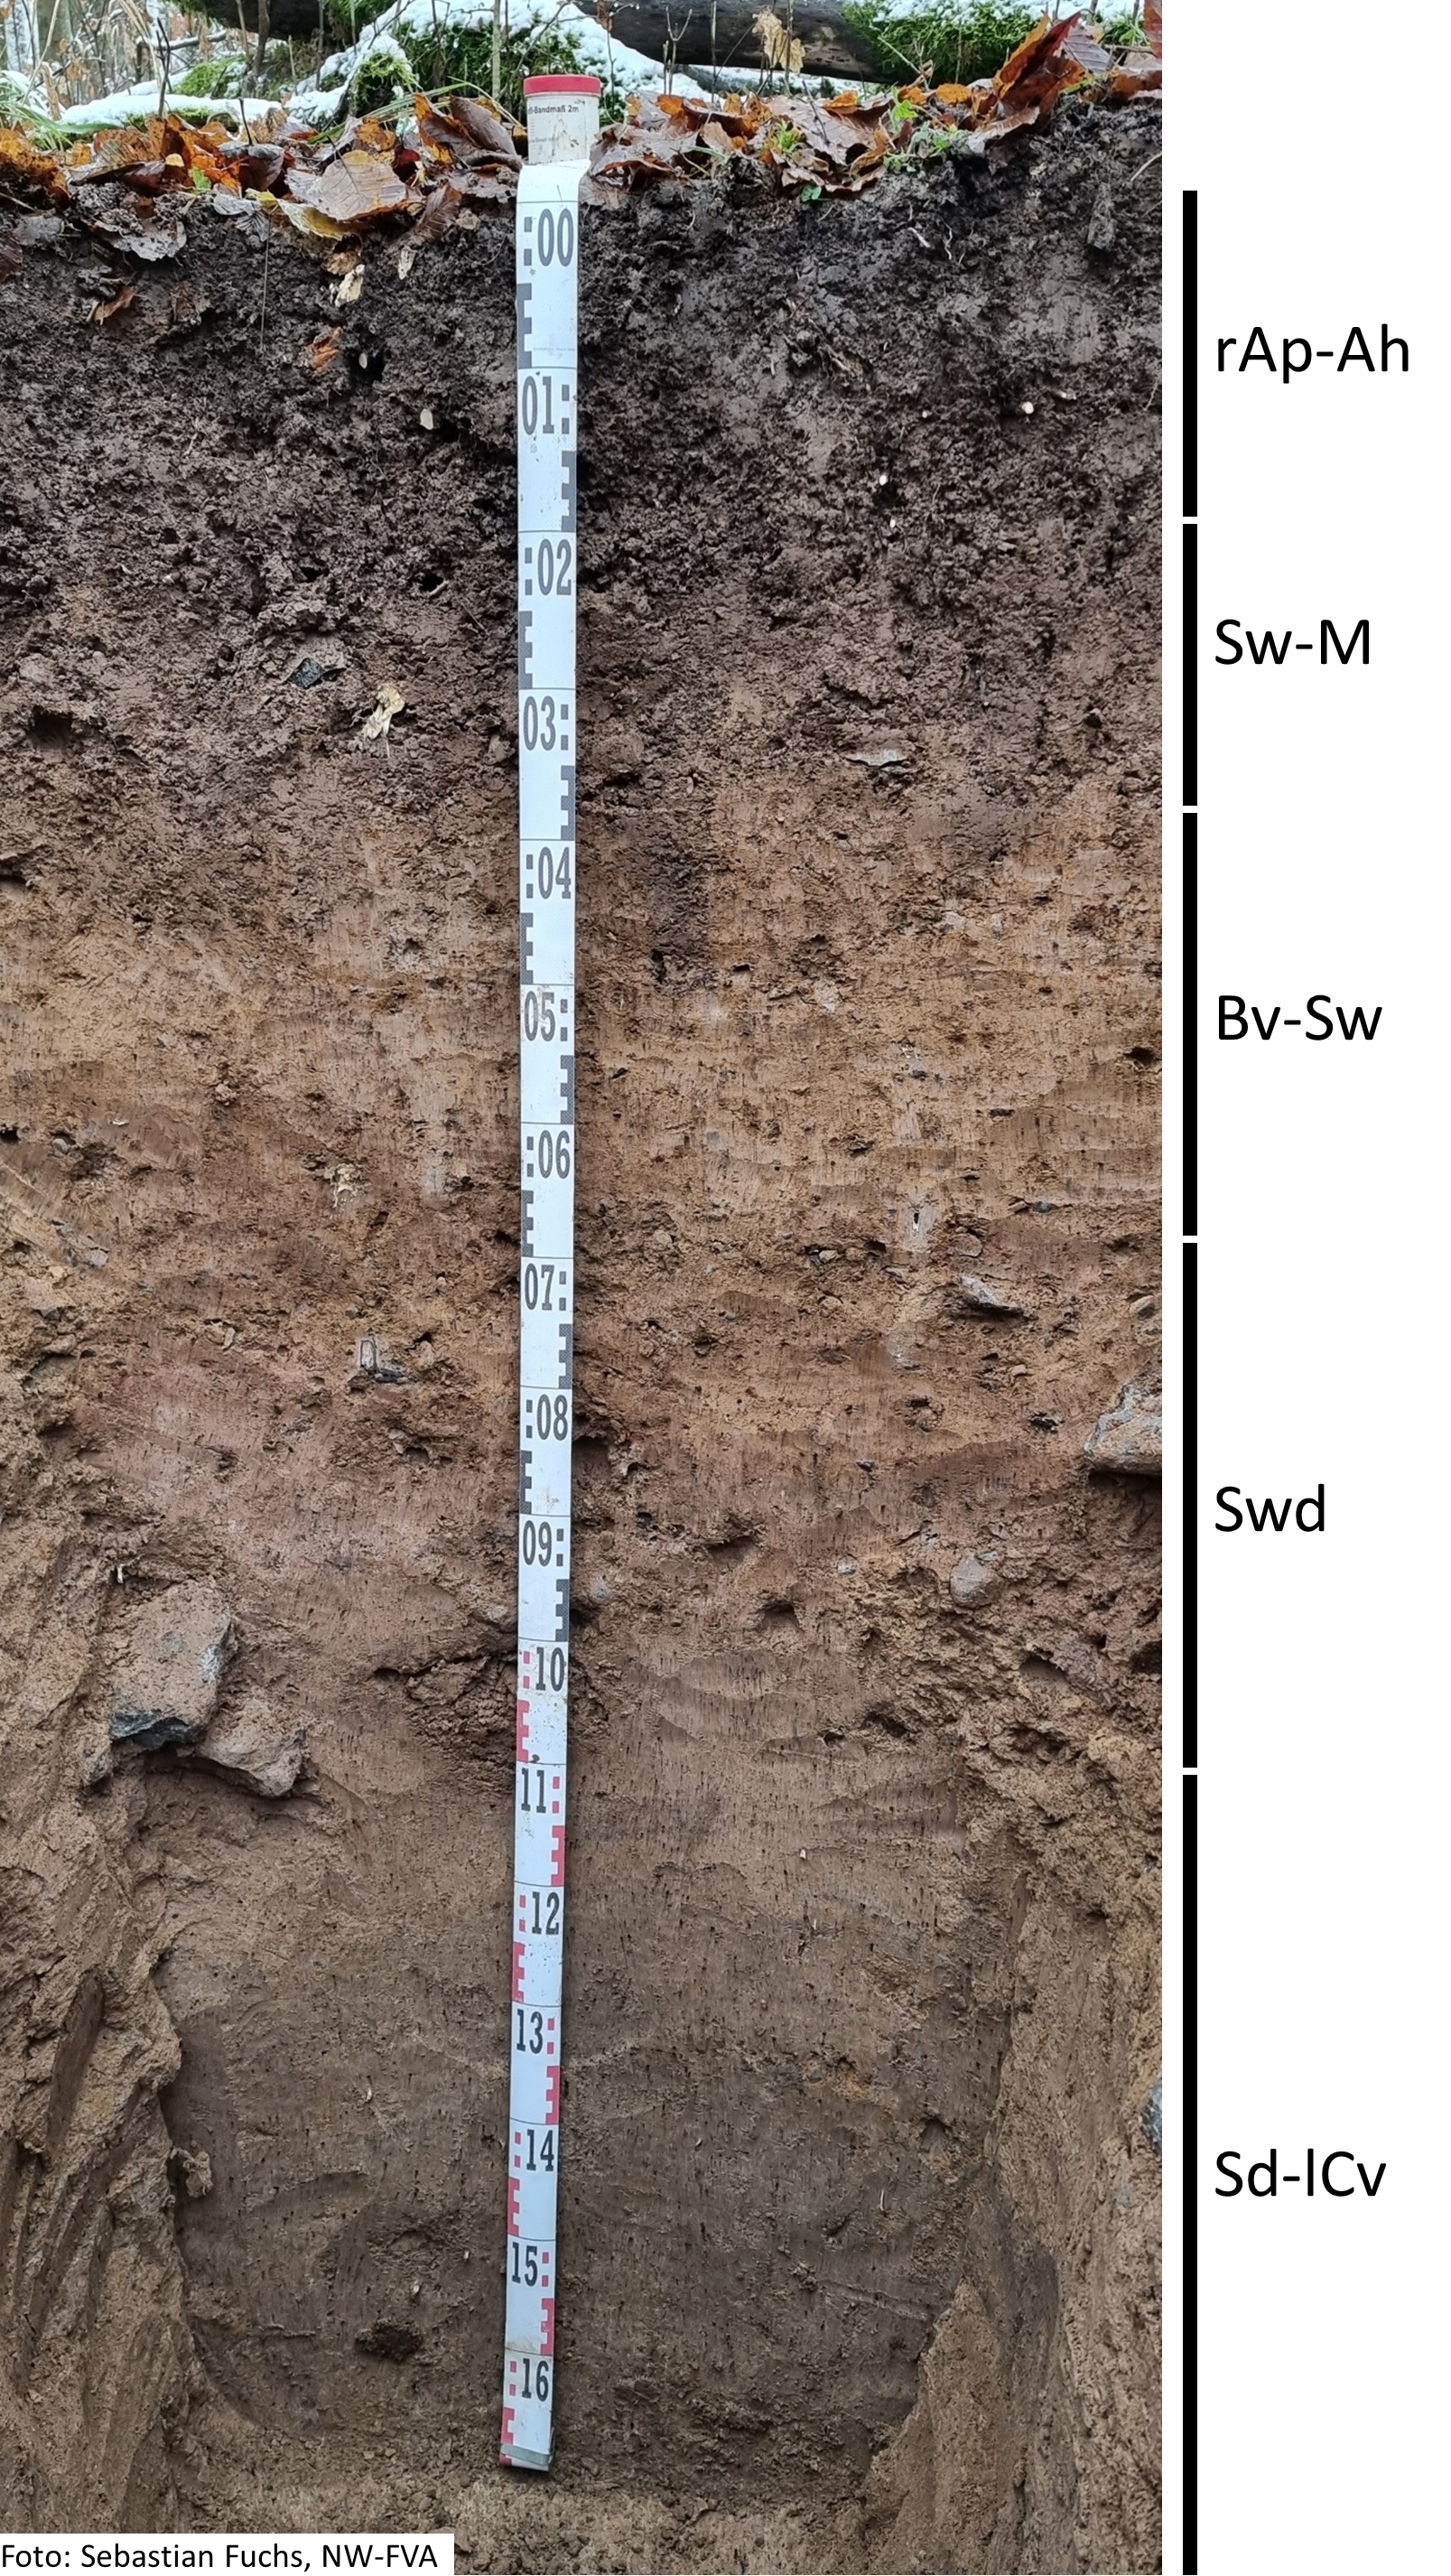 Das Foto zeigt einen senkrechten Schnitt durch den Boden der Untersuchungsfläche. Das Bodenprofil enthält folgende Bodenhorizonte: rAp-Ah, Sw-M, Bv-Sw, Swb, Sd-lCv